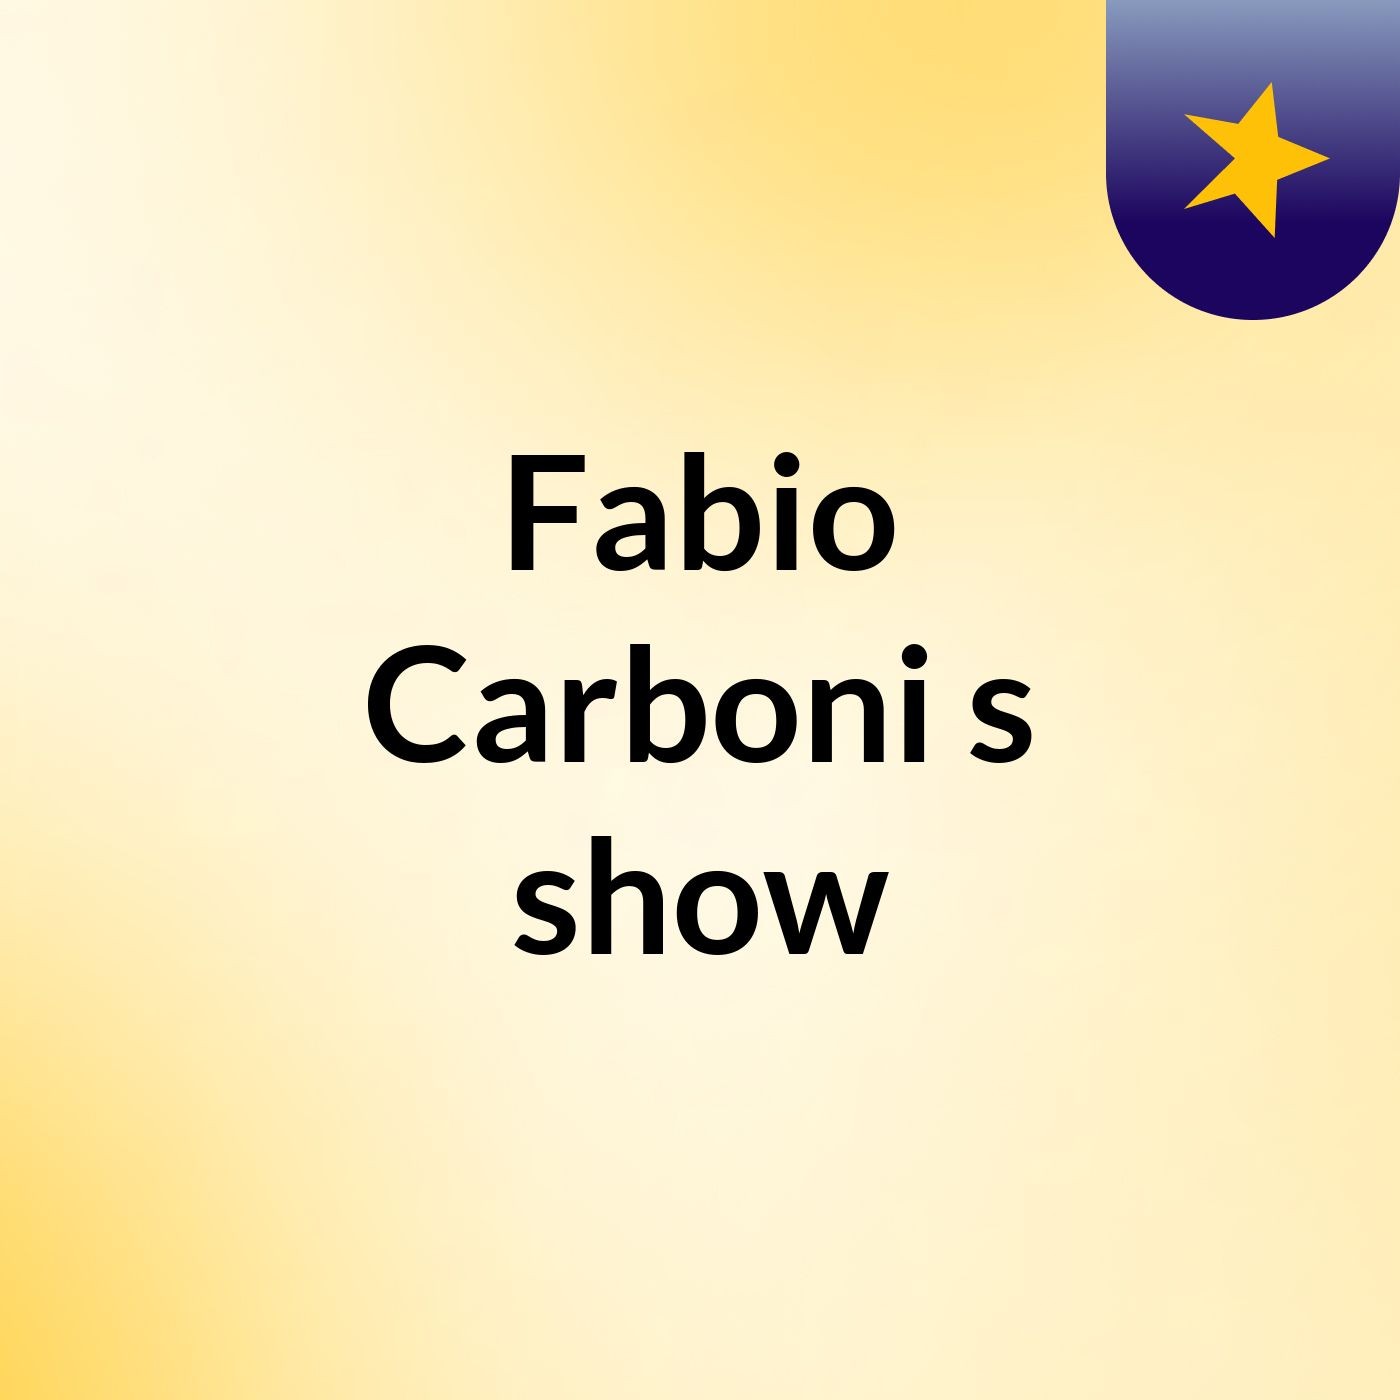 Fabio Carboni's show